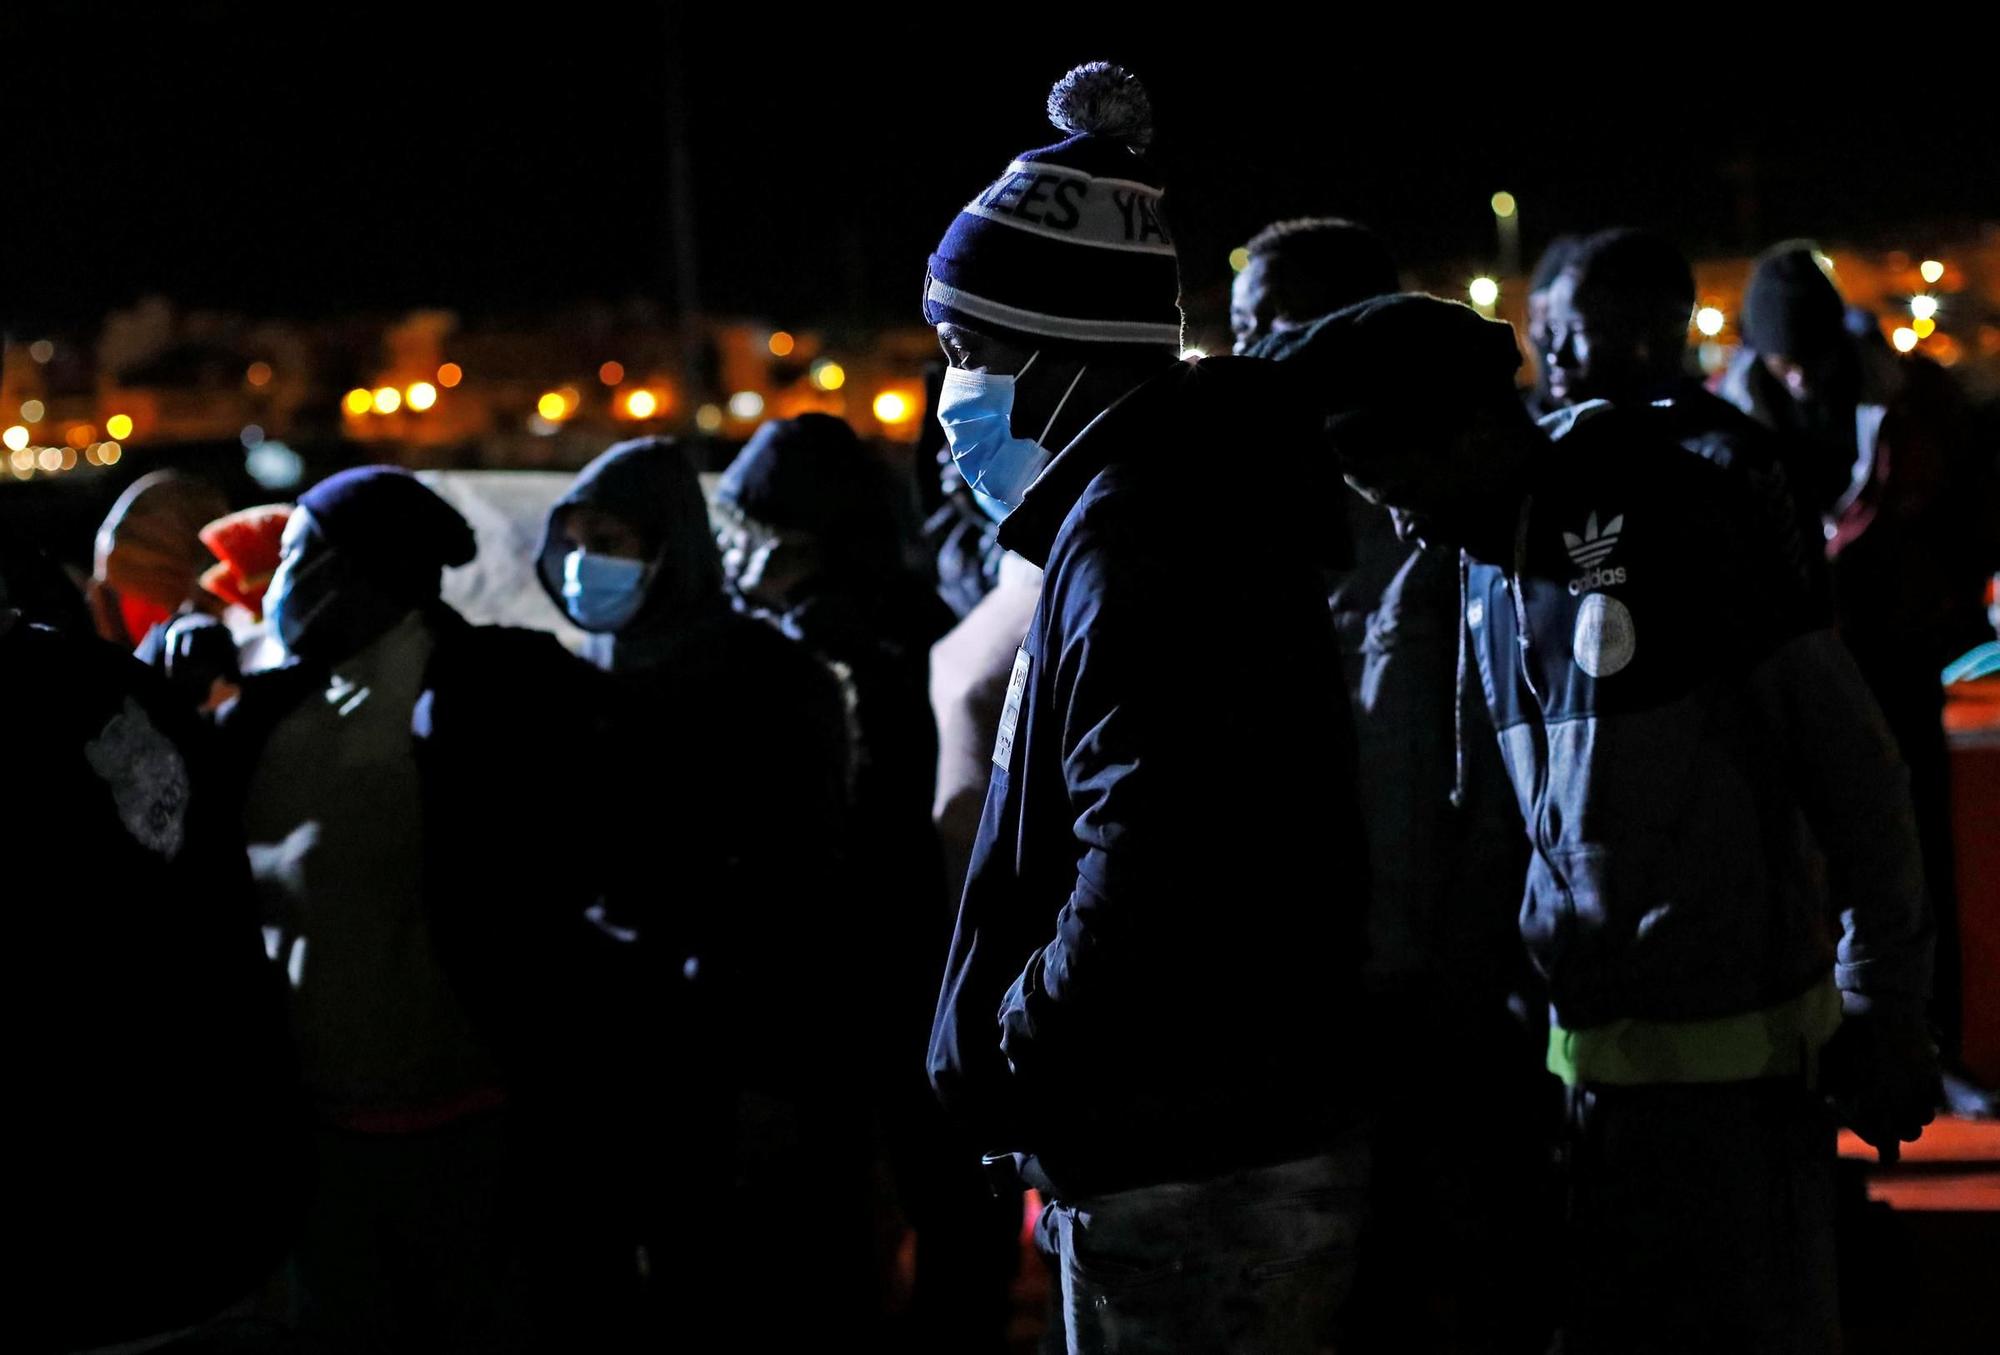 Llegan 140 migrantes a Gran Canaria, uno de ellos fallecido